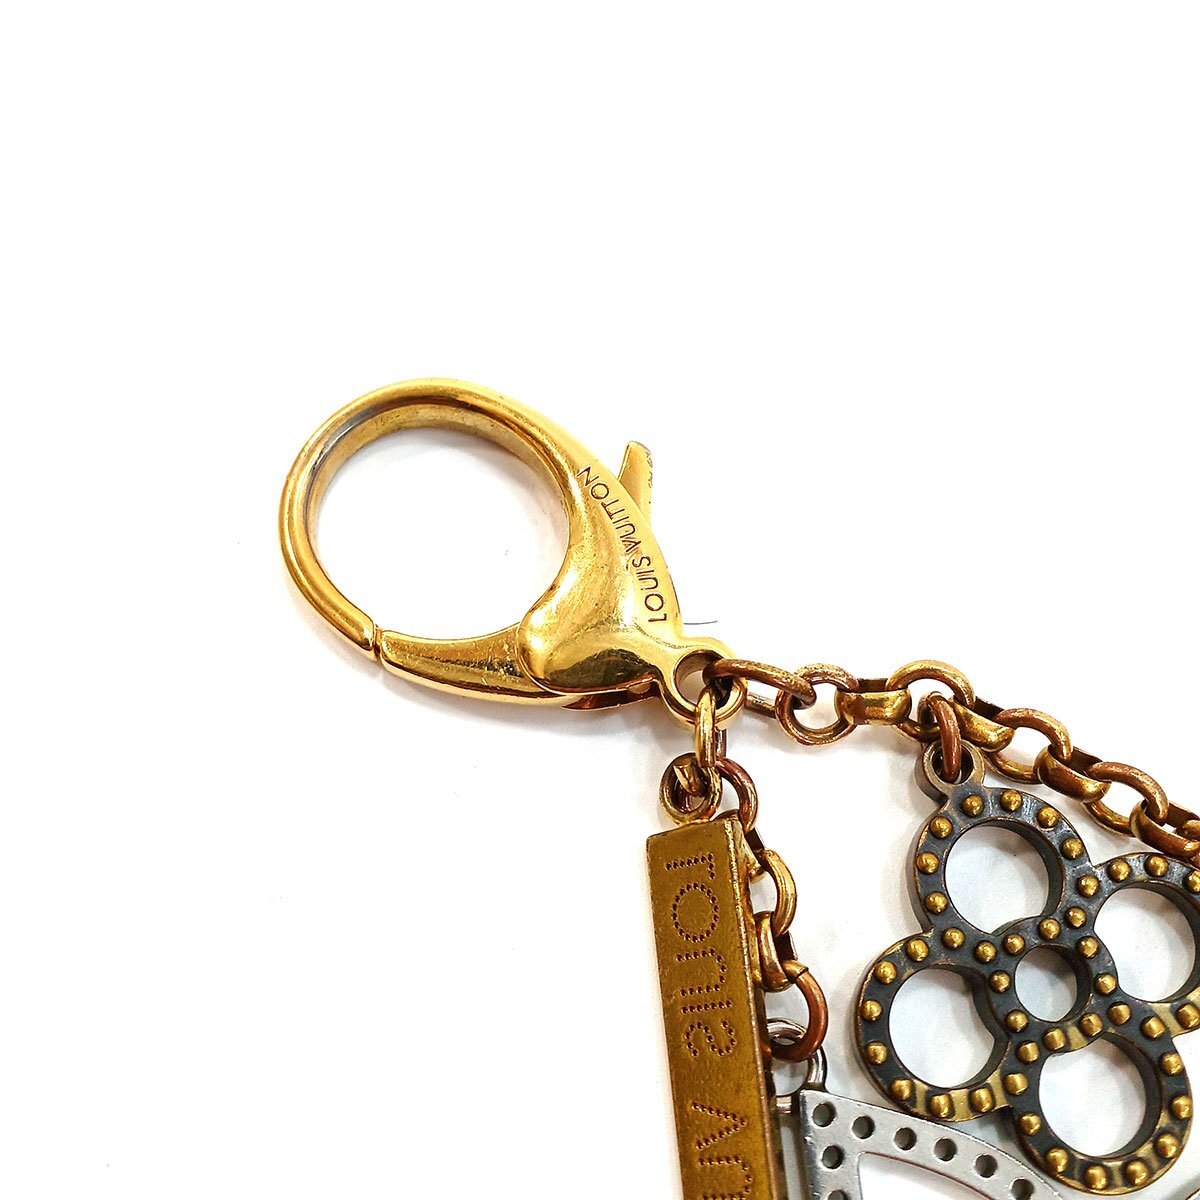  Louis Vuitton biju-sak*ta purge .M65090 bag charm key holder key ring LOUIS VUITTON used *